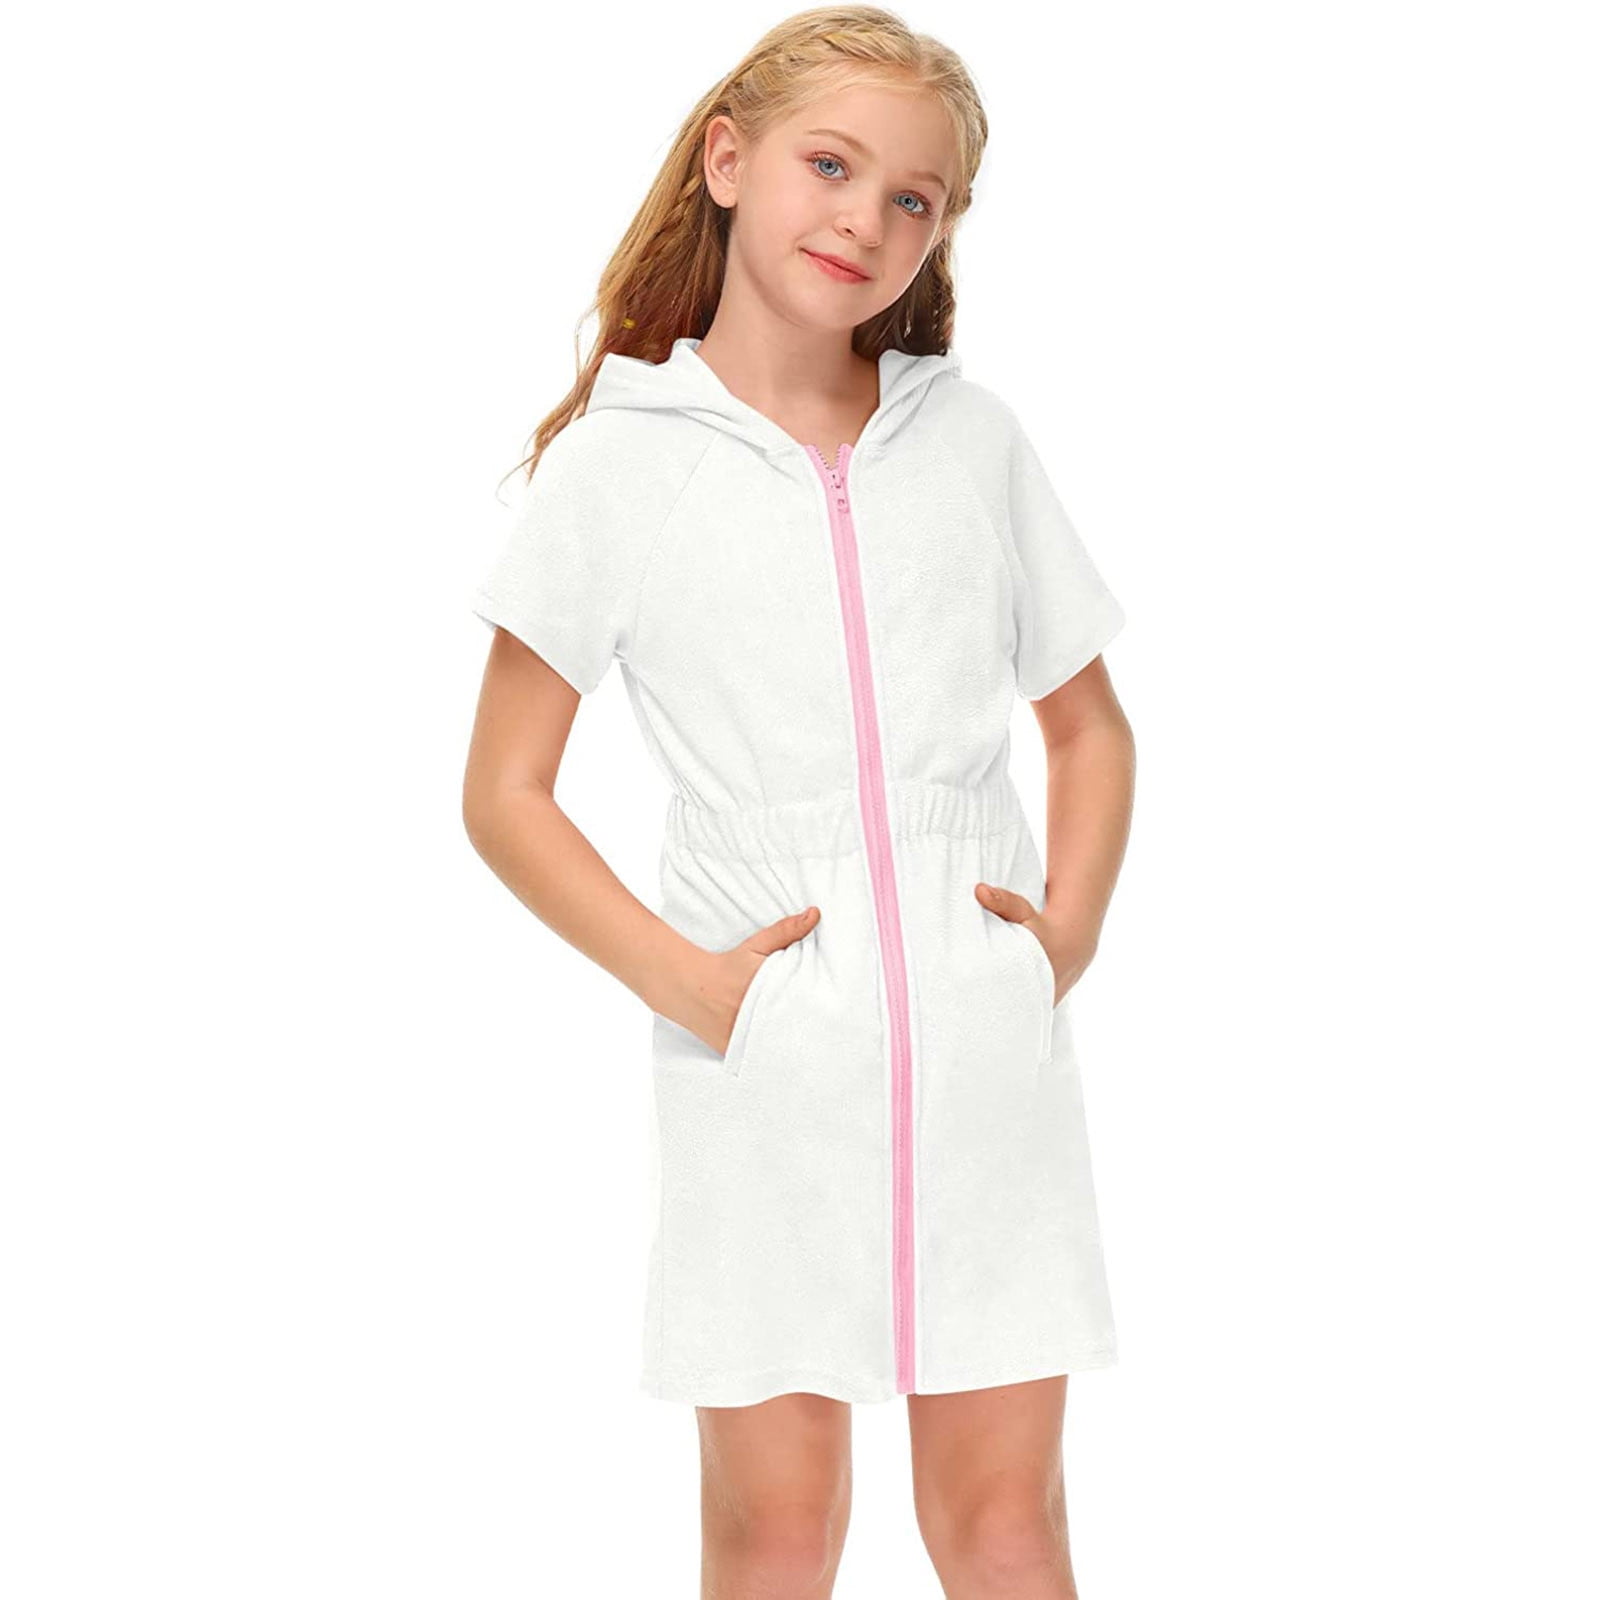 Little Girl Dress Girl's Swimsuit Zip Up Terry Cover Up Hooded Bathrobe ...